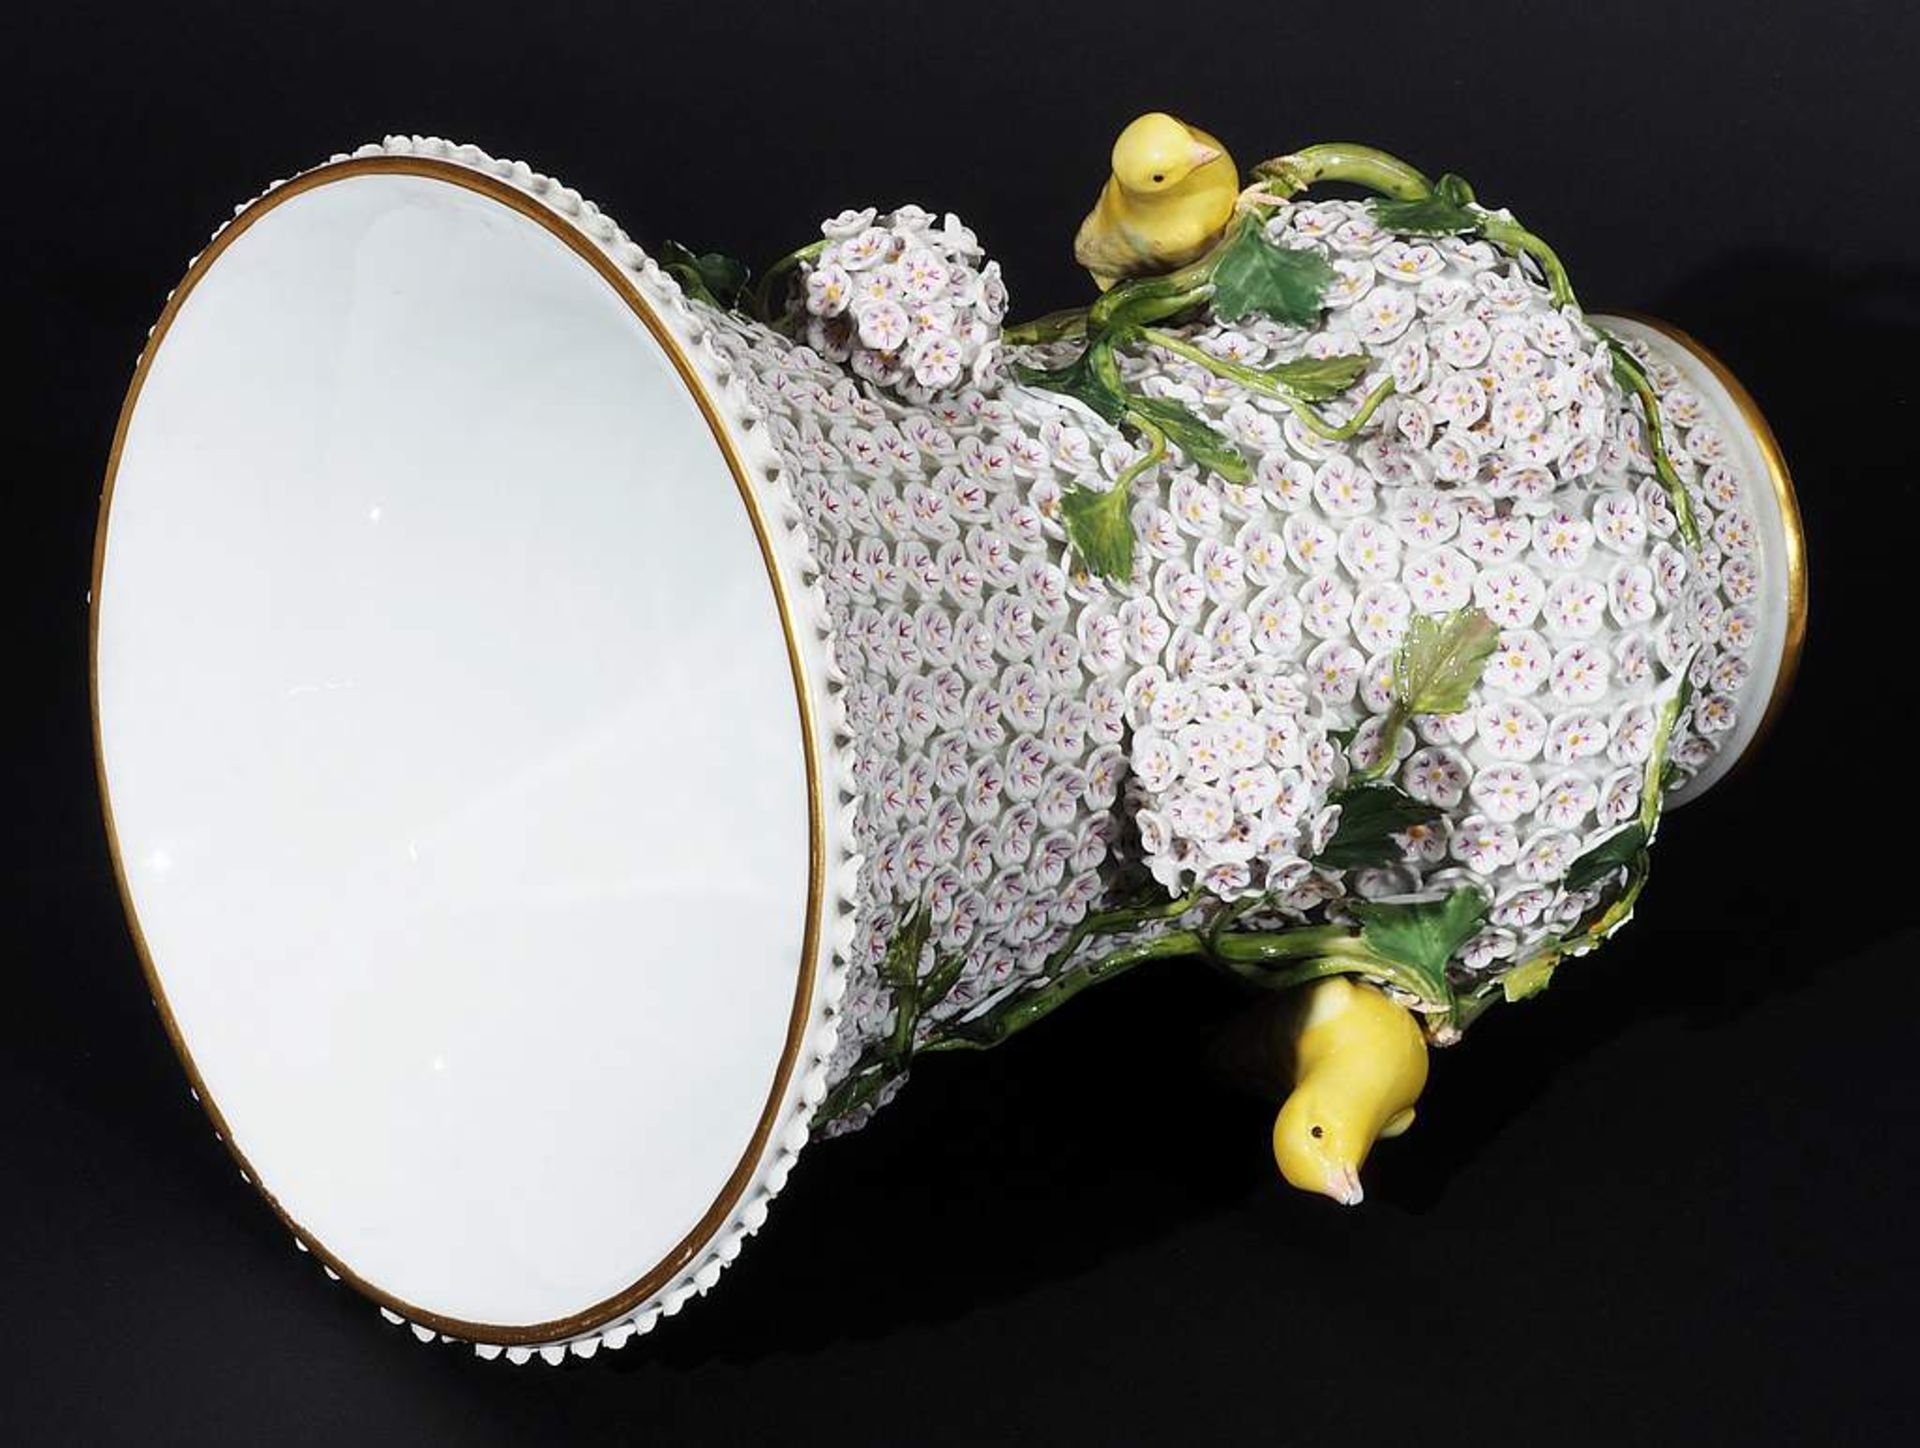 Prachtvolle Vase mit Schneeballblüten und zwei Vögeln. MEISSEN 1860 - 1923, 1. Wahl. Modell vo - Image 5 of 9